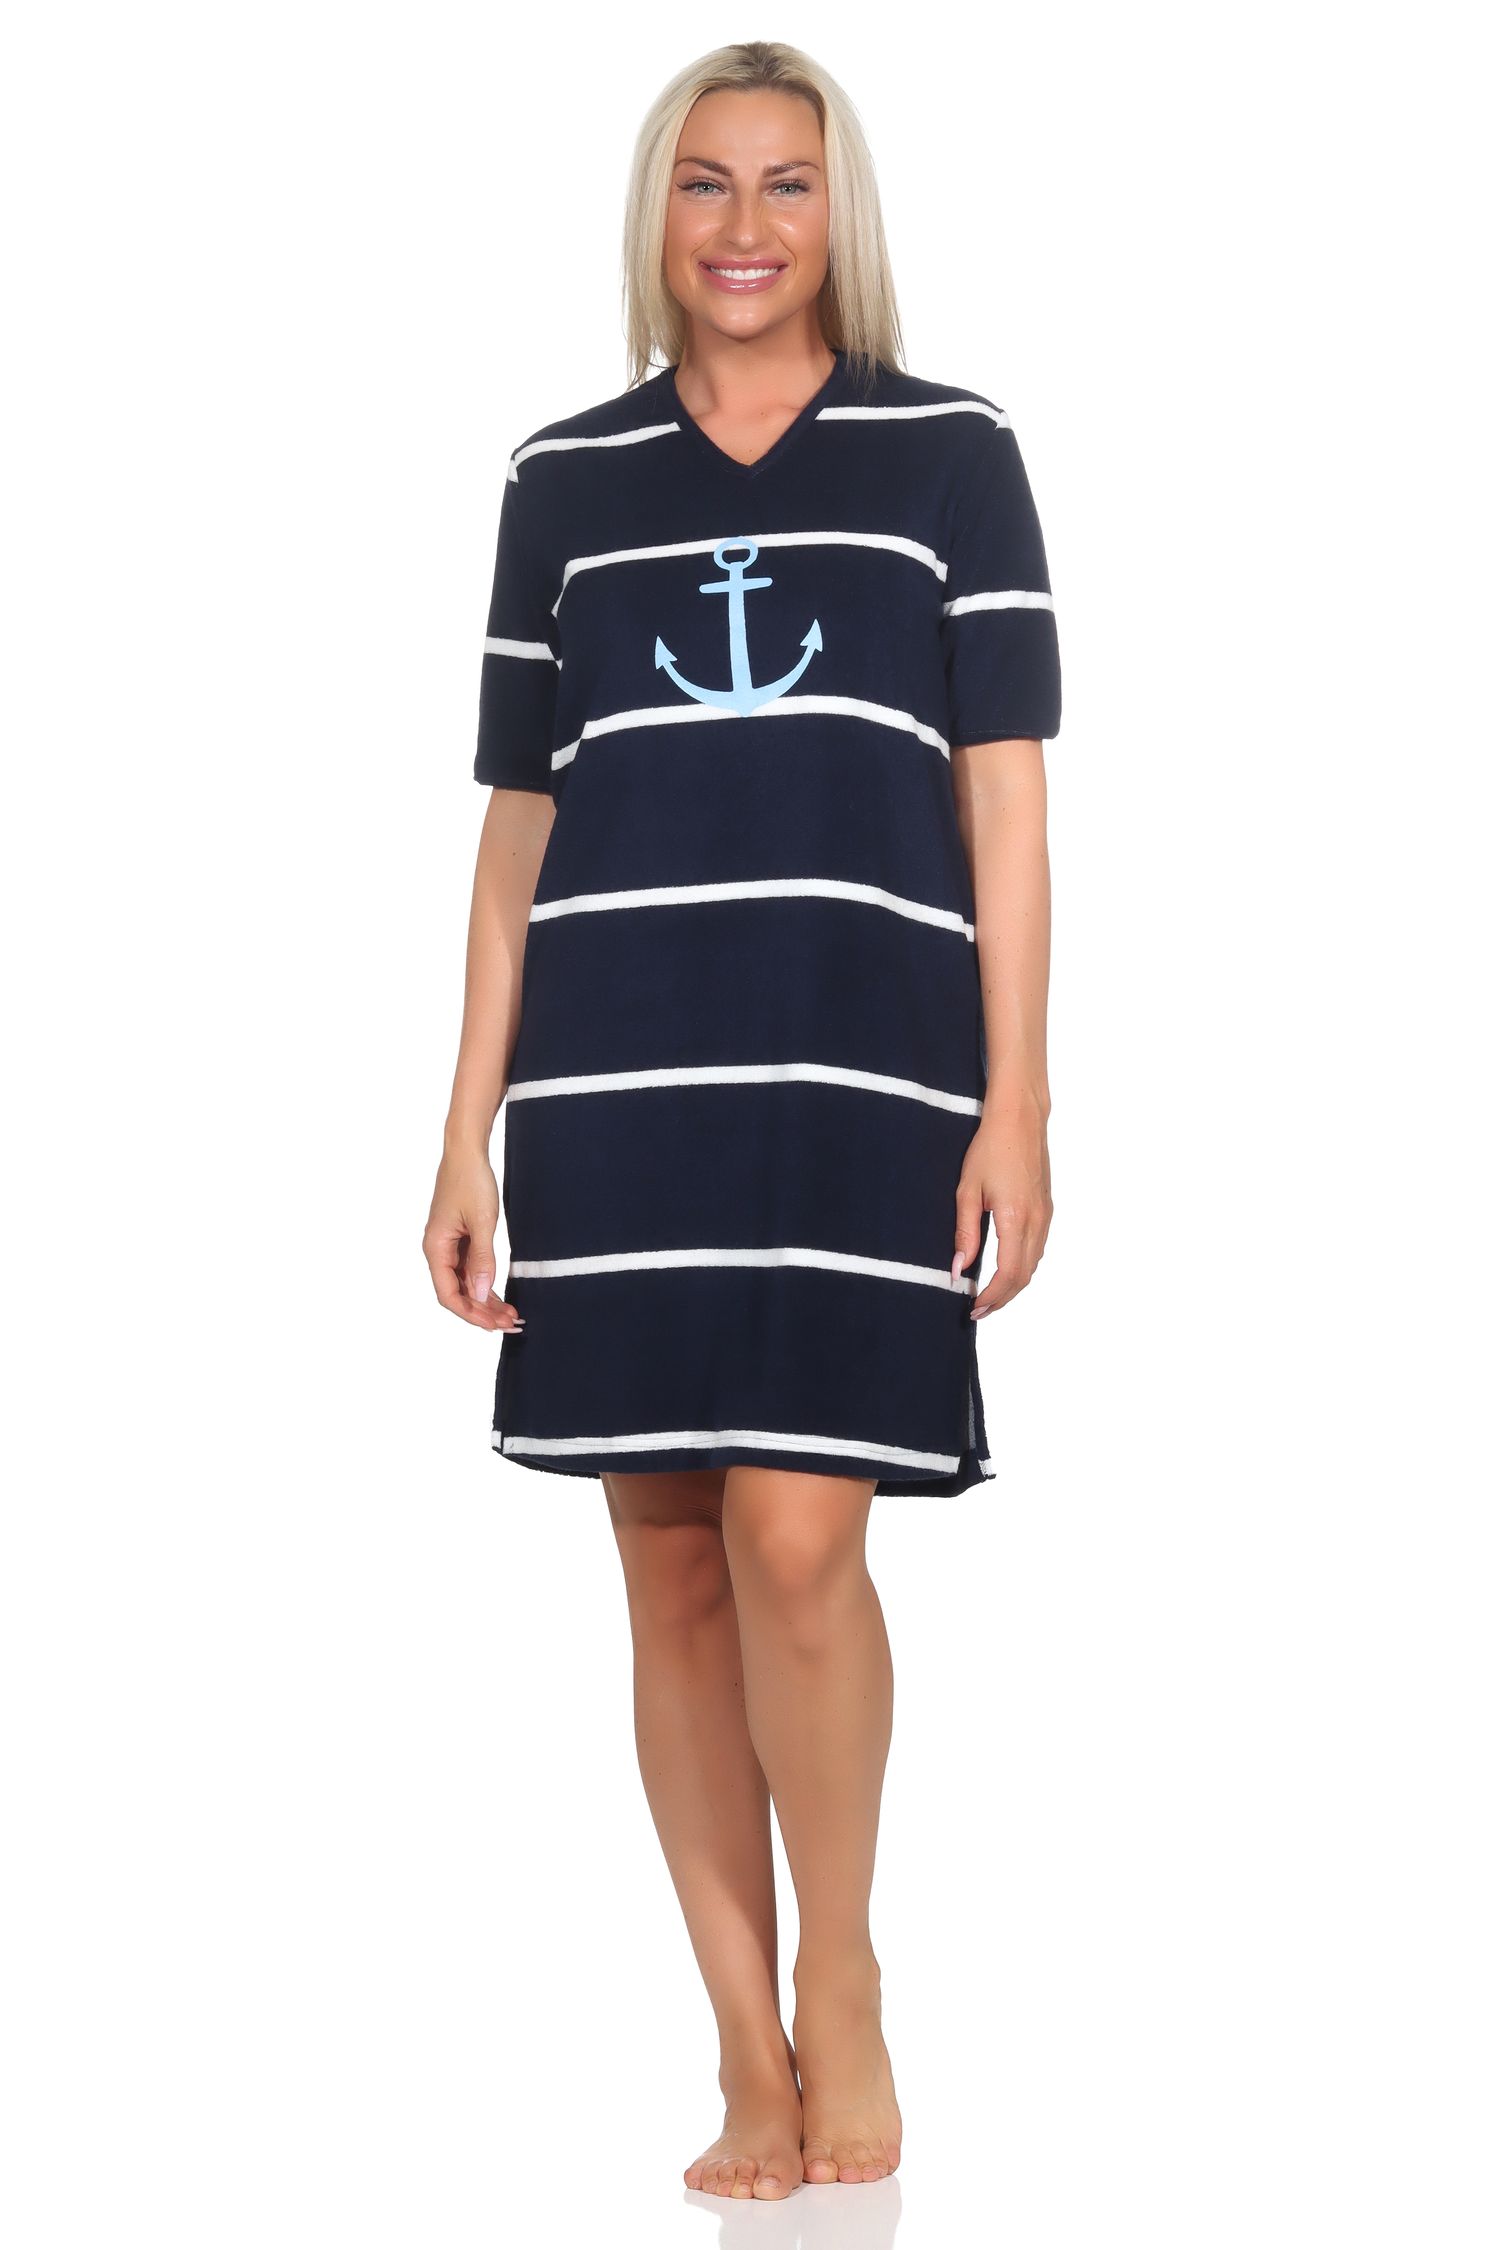 Normann Damen Nachthemd in maritimer Optik mit Anker Motiv - auch in Übergröße